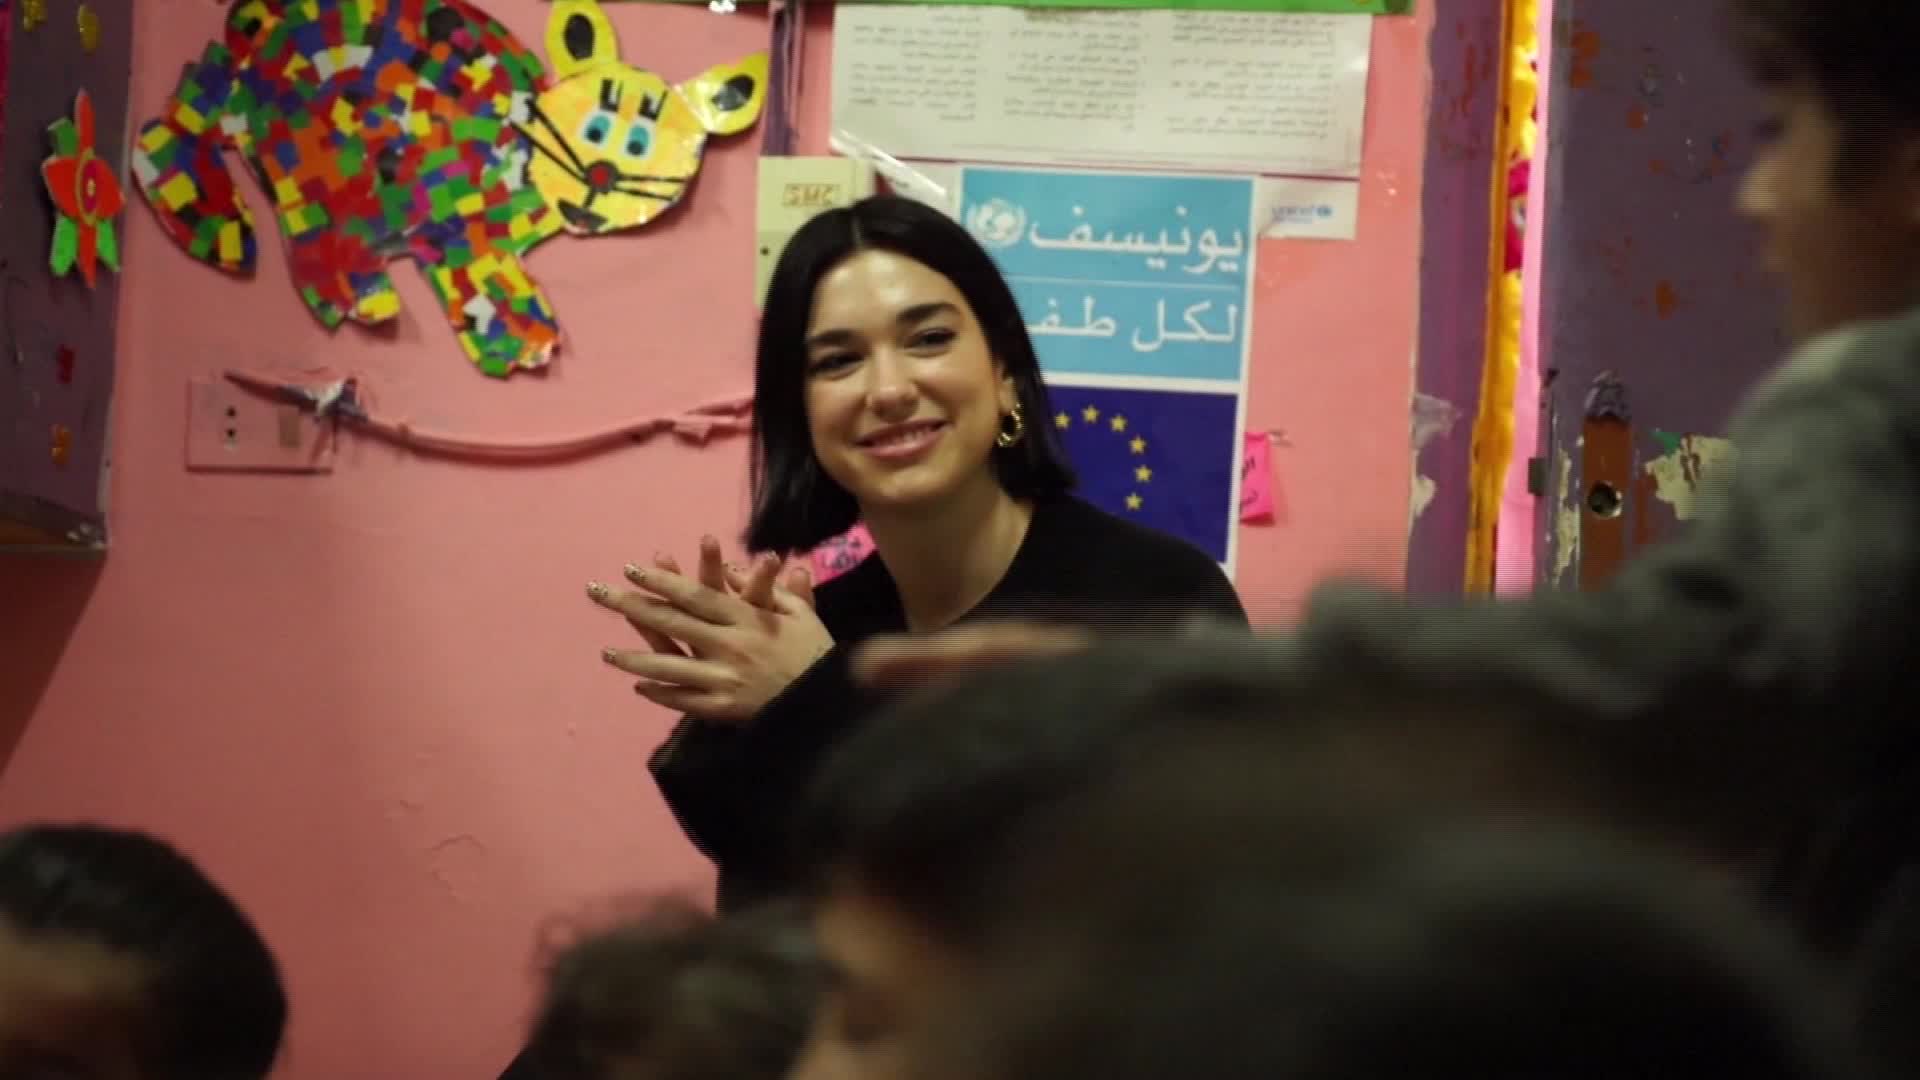 المغنية الحائزة على "غرامي" دوا ليبا تزور لاجئي سوريا في لبنان